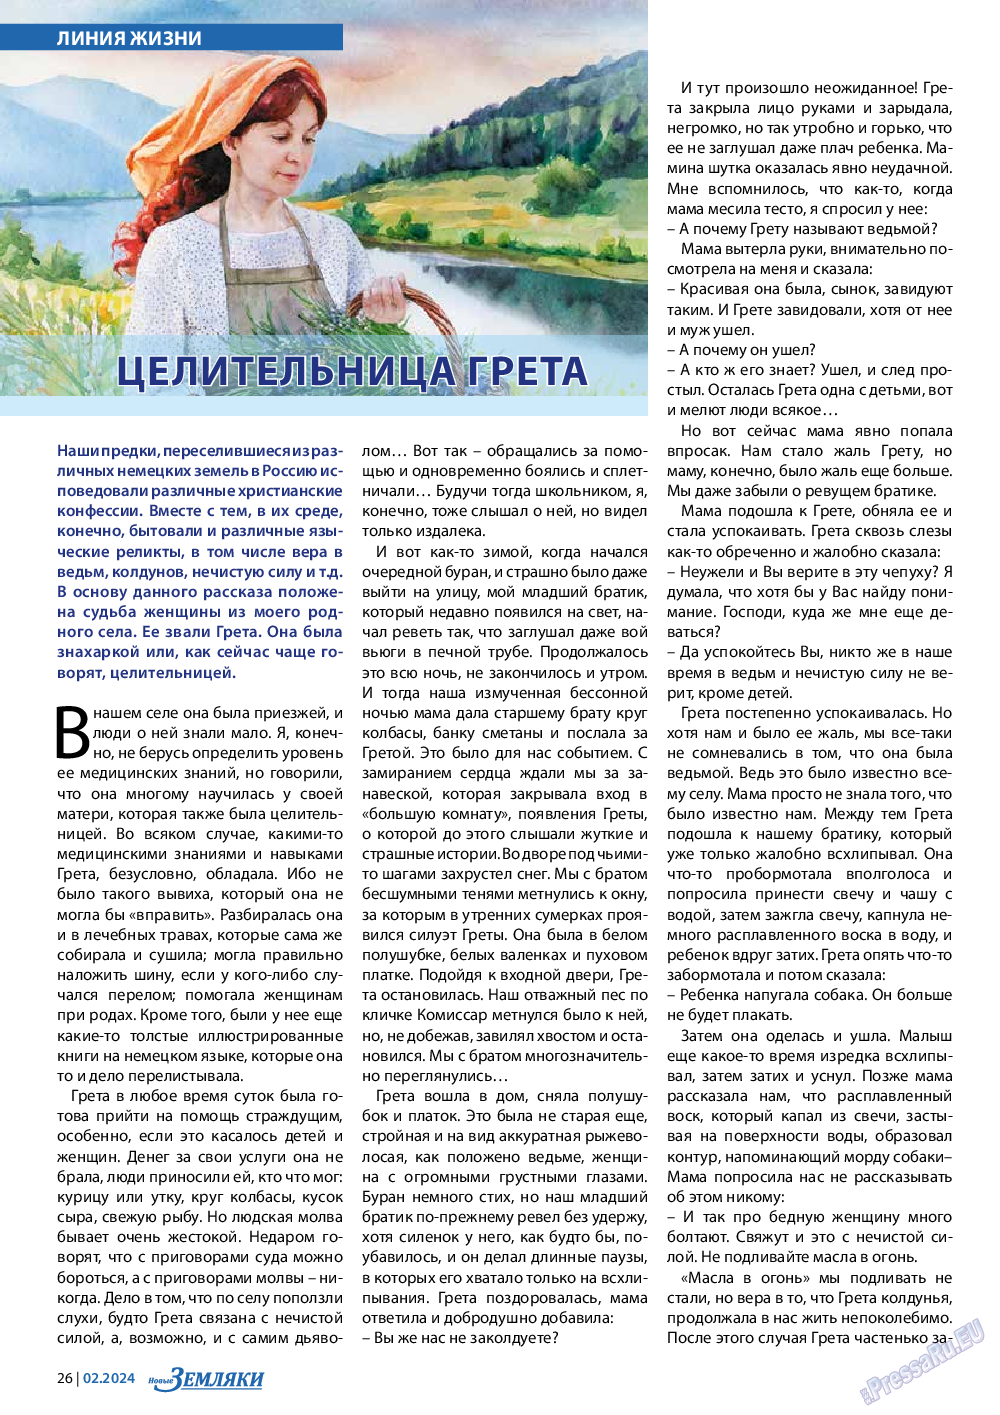 Новые Земляки, газета. 2024 №2 стр.26